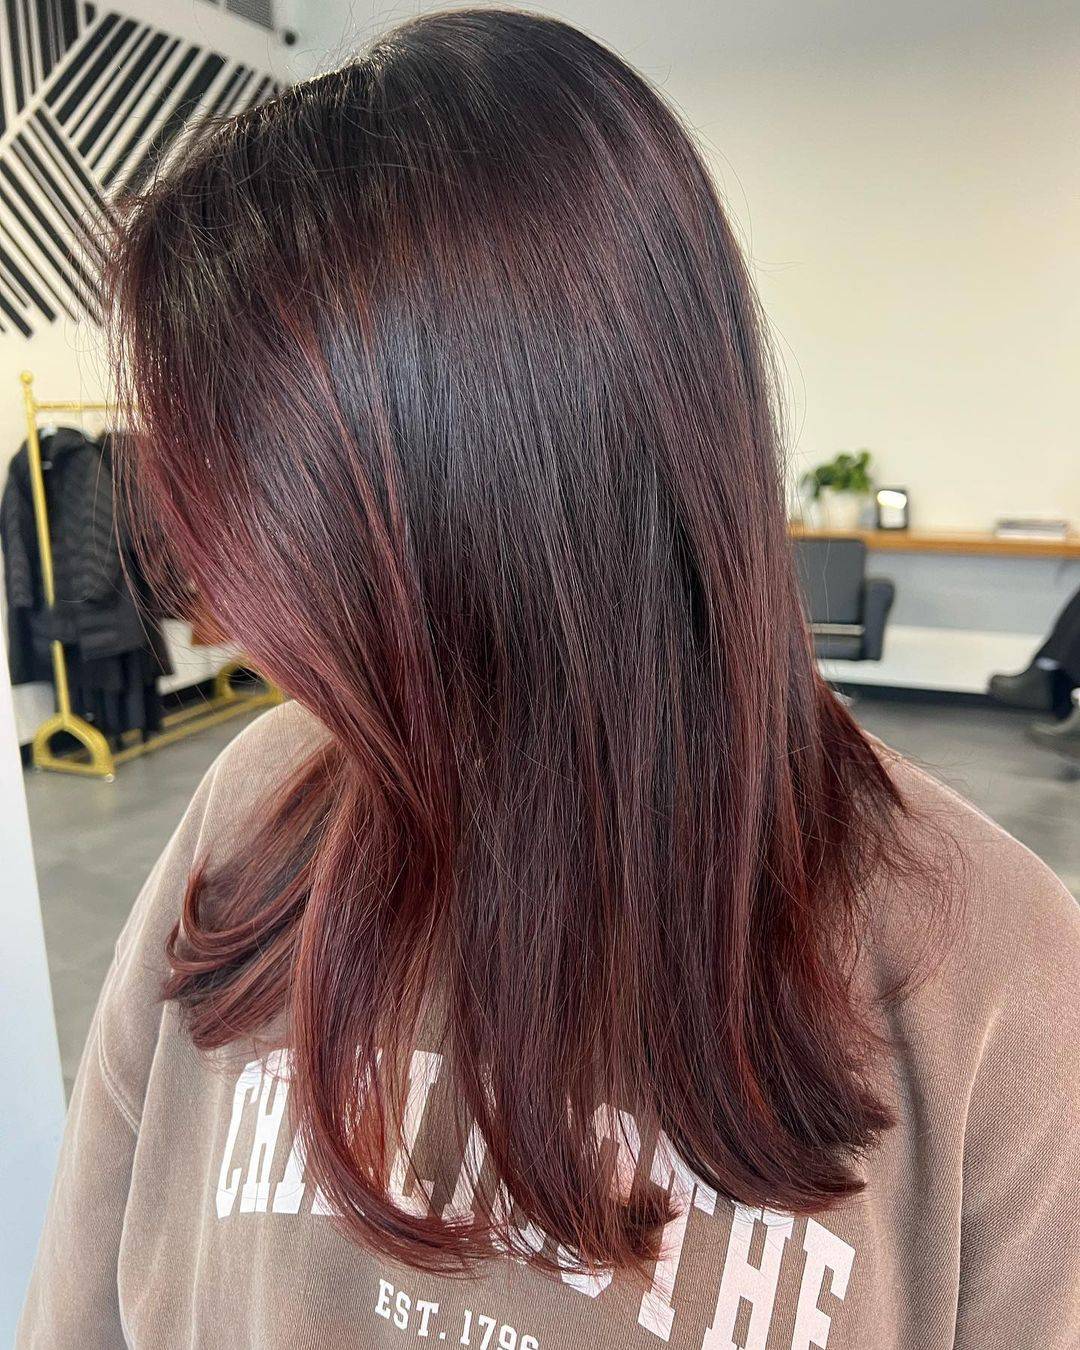 Burgundy hair color 444 burgundy hair color | burgundy hair color for women | burgundy hair color highlights Burgundy Hair Color